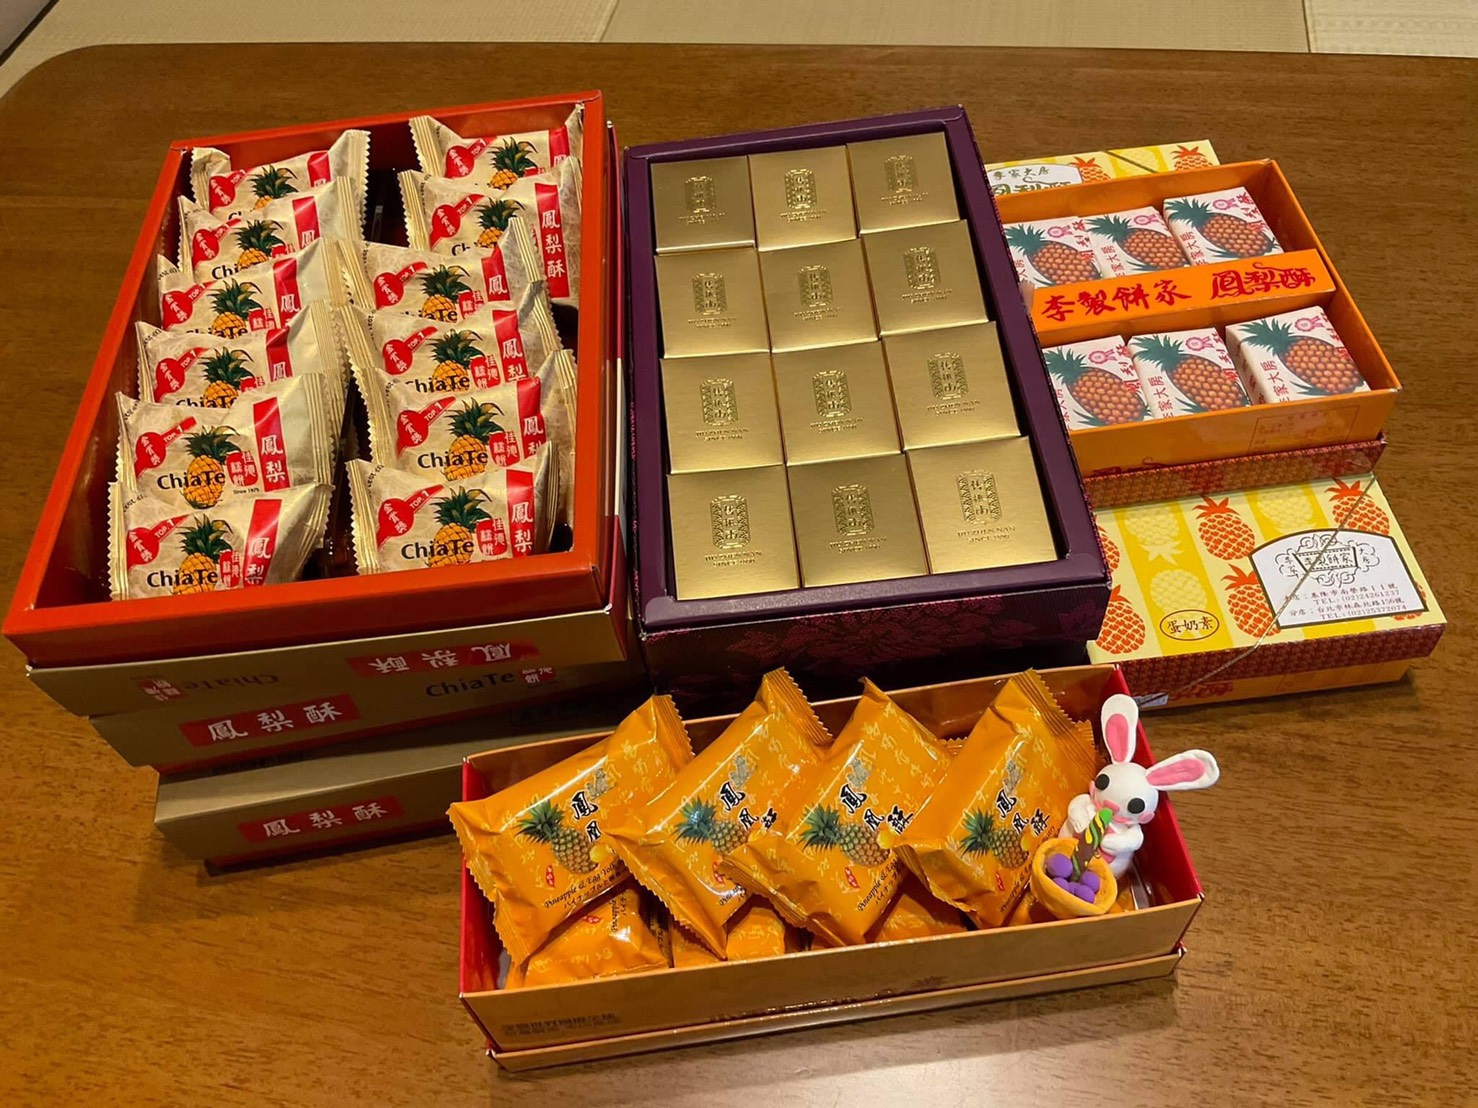 參加者人人有獎，大家都開心地品嘗到臺灣直送的名店鳳梨酥。